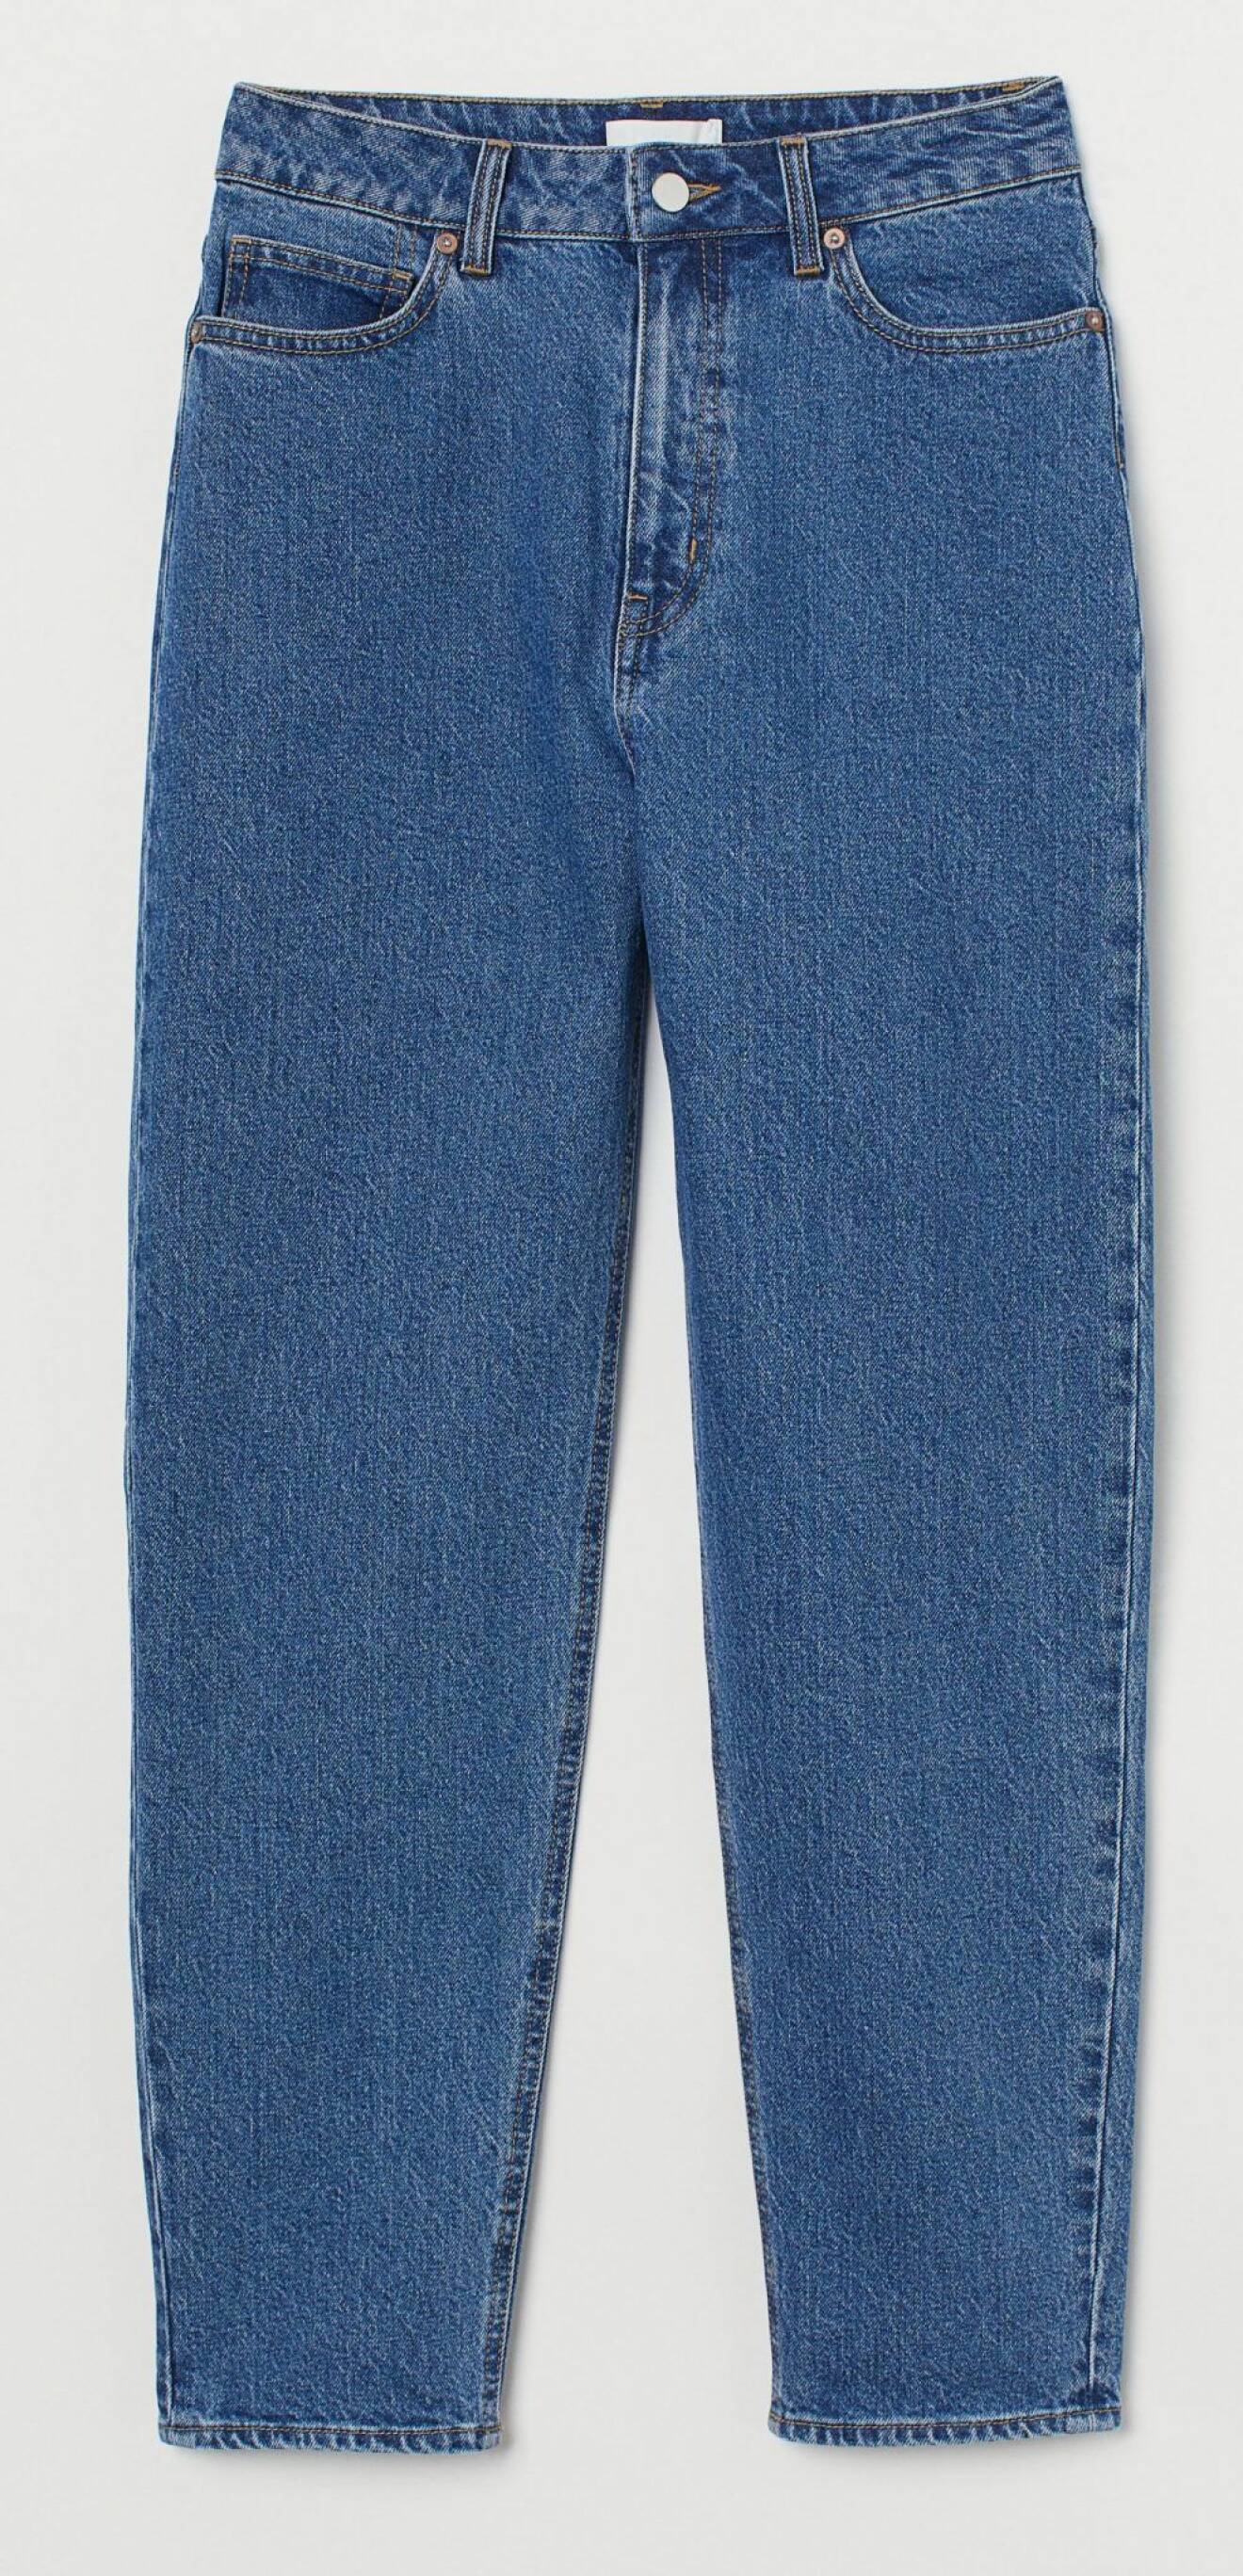 Jeans i mörkblå tvätt från H&M.